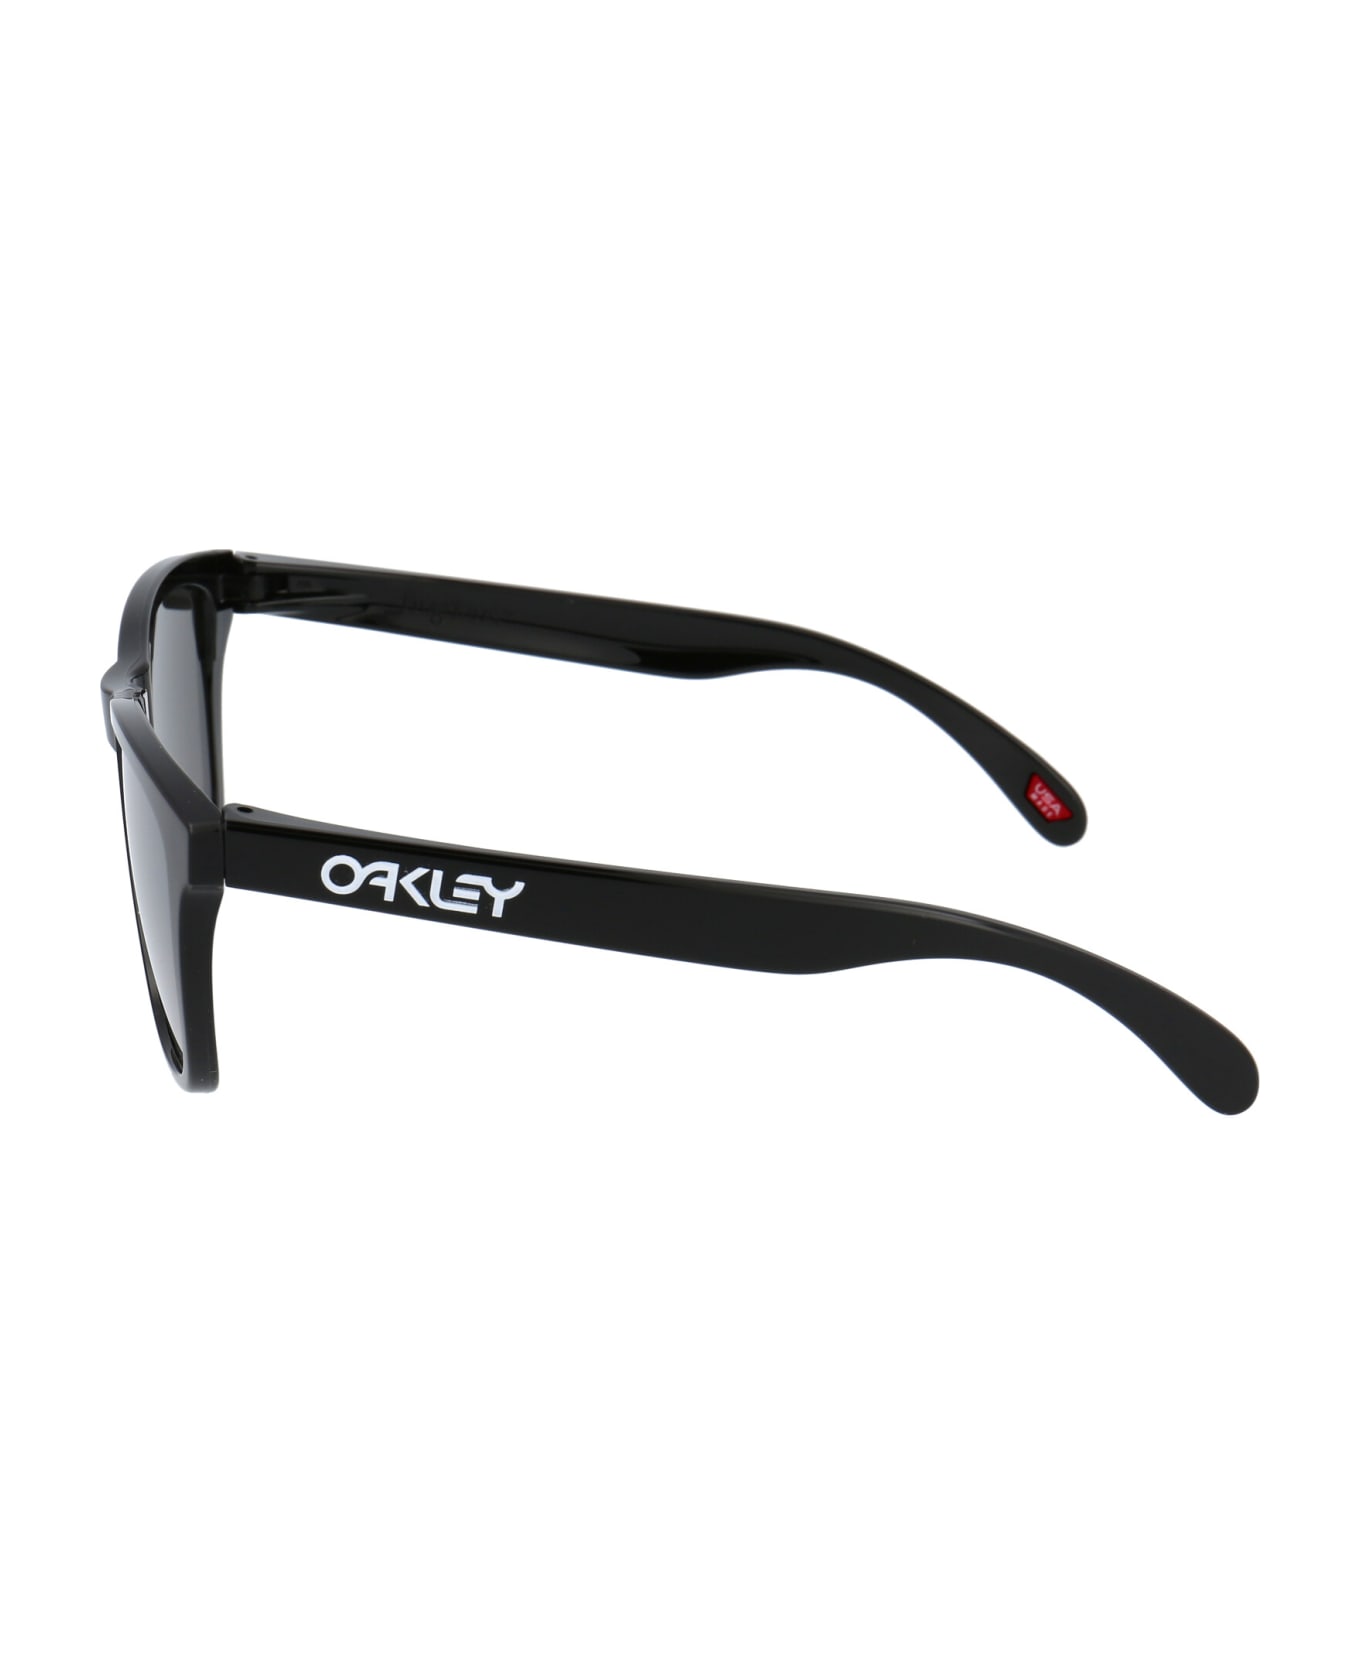 Oakley Frogskins Sunglasses - 9013C4 POLISHED BLACK